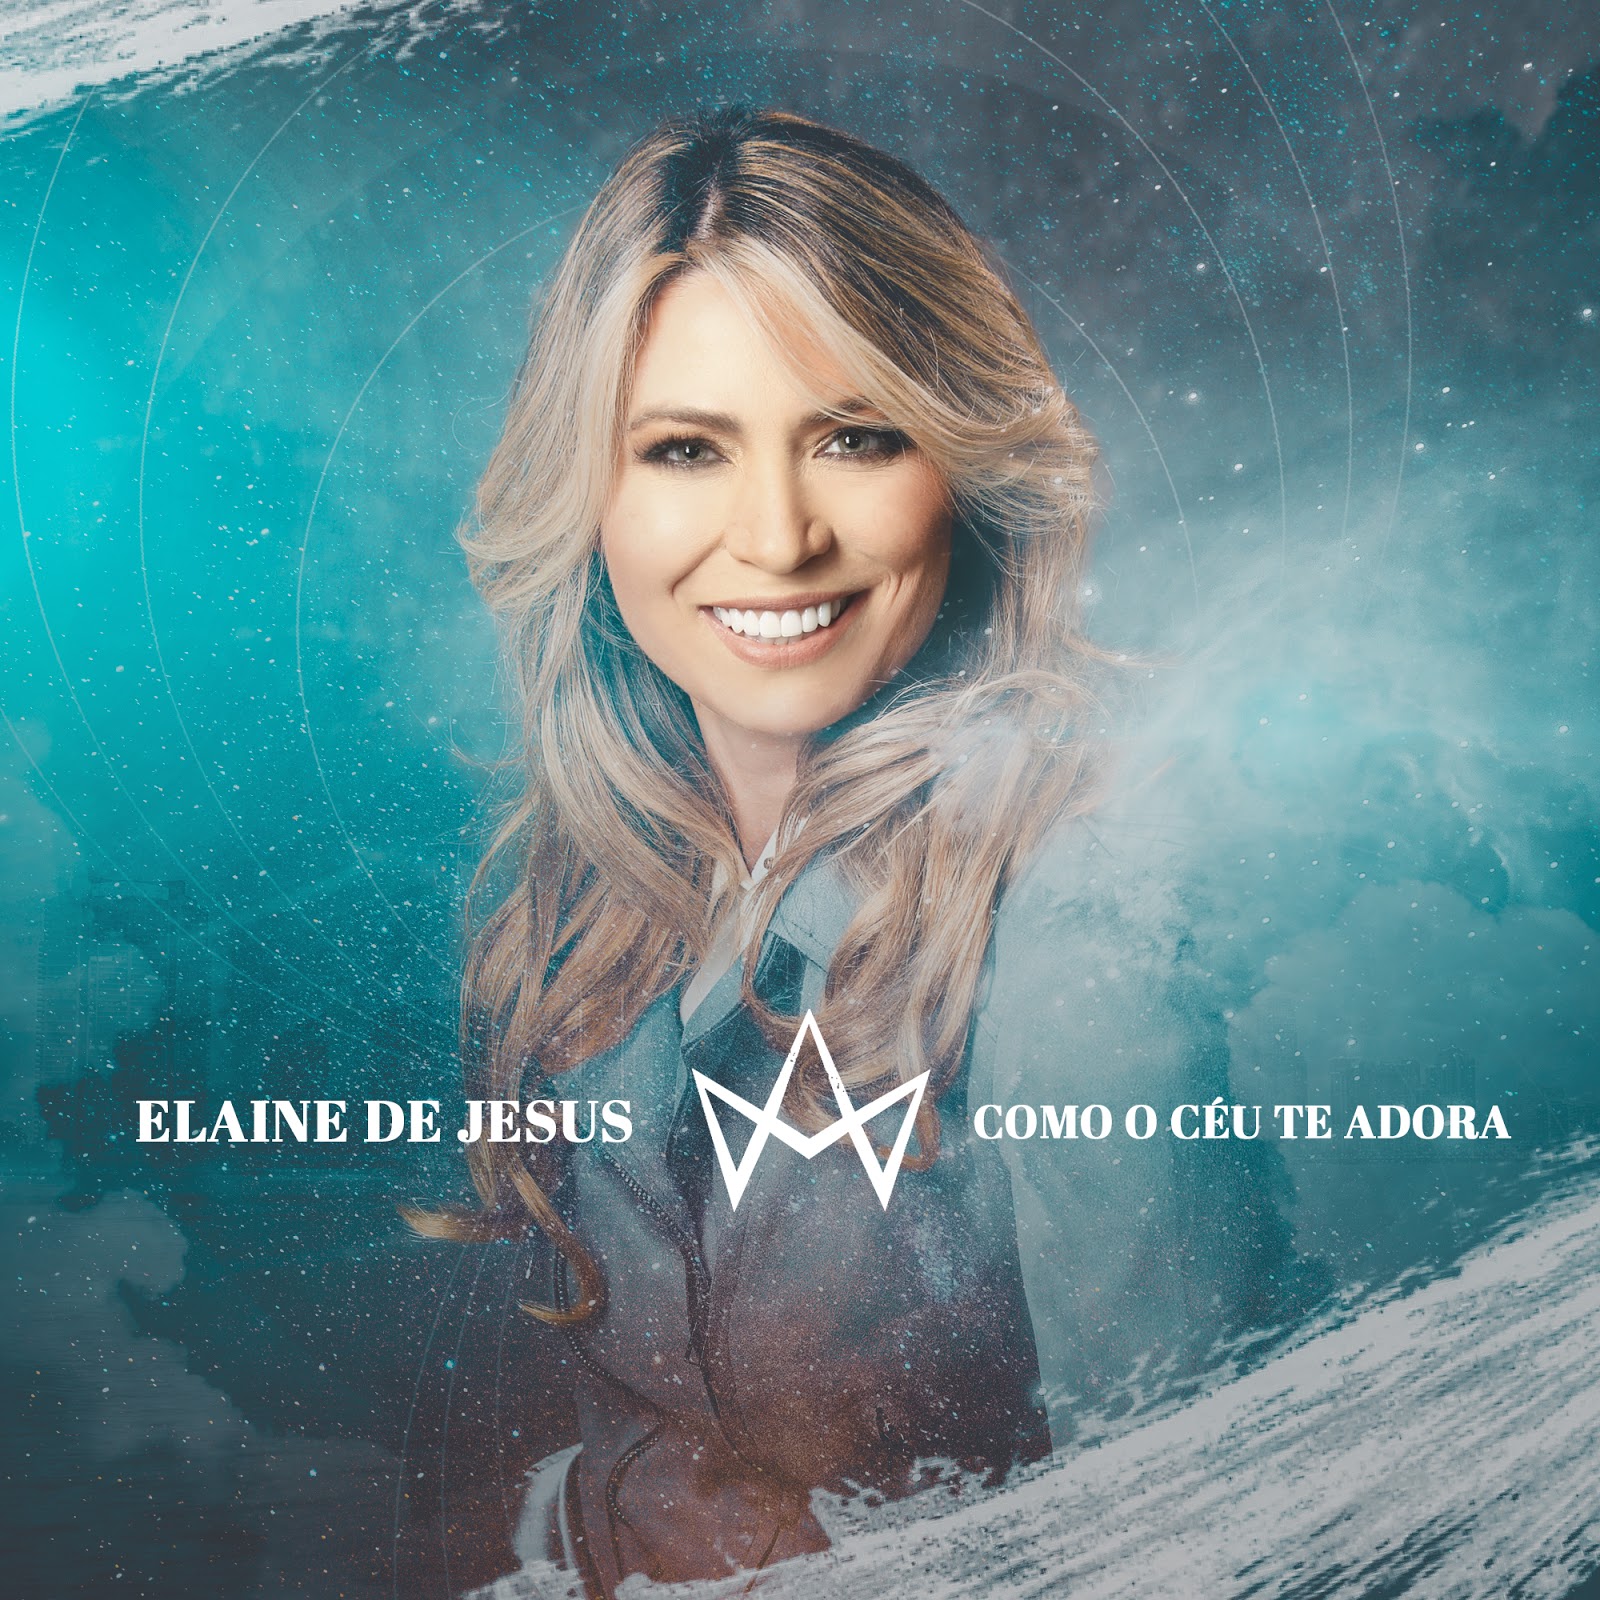 Elaine de Jesus lança seu novo EP “Como o Céu Te Adora”, no YouTube